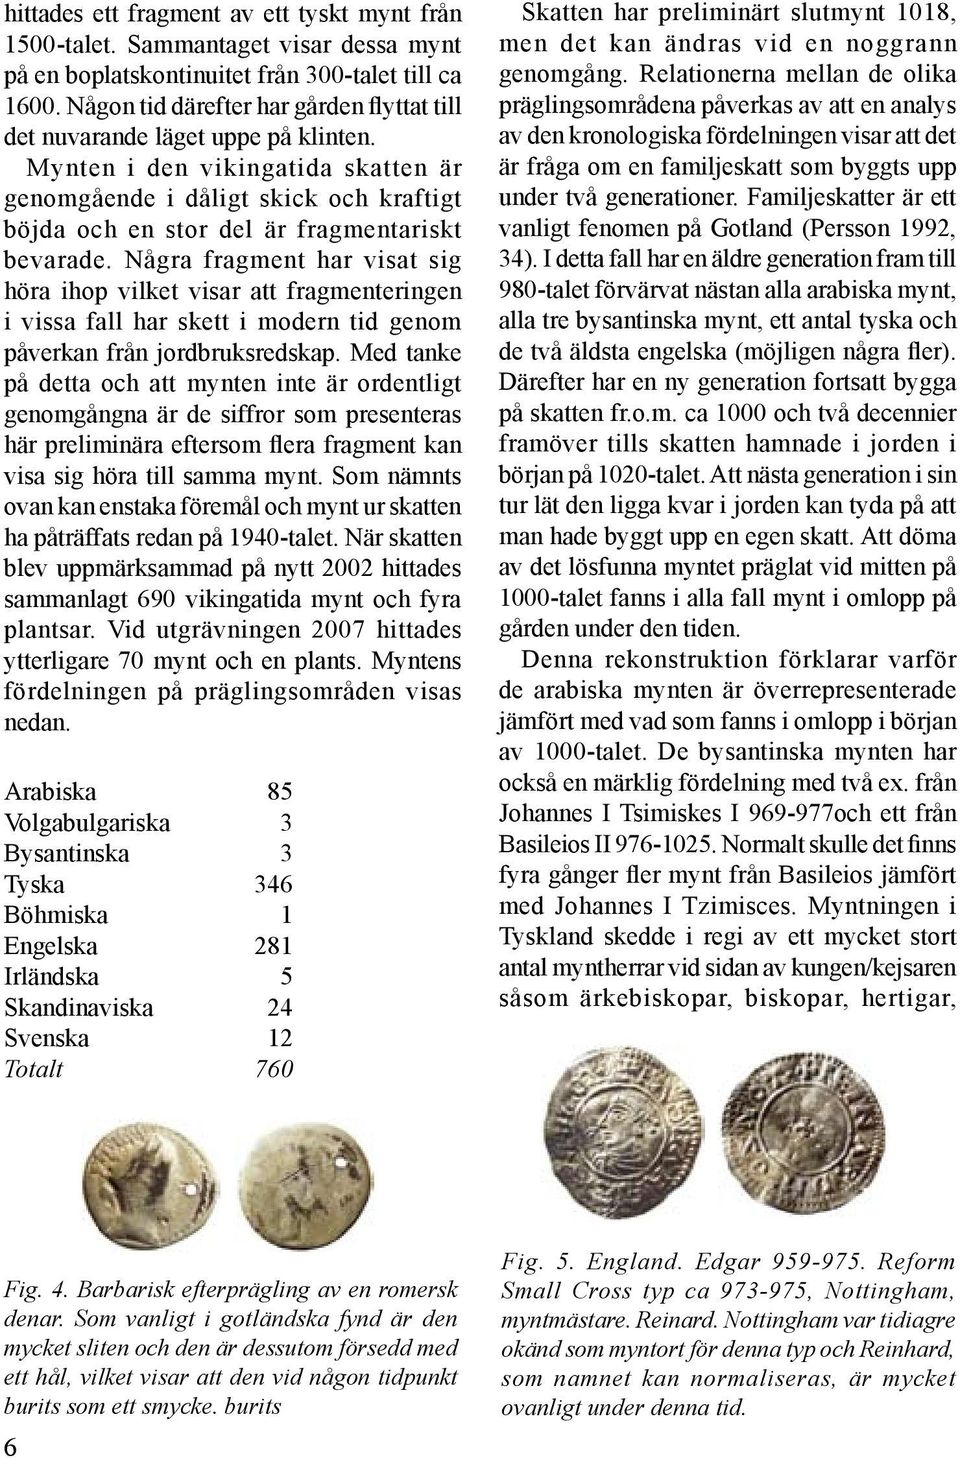 Mynten i den vikingatida skatten är genomgående i dåligt skick och kraftigt böjda och en stor del är fragmentariskt bevarade.